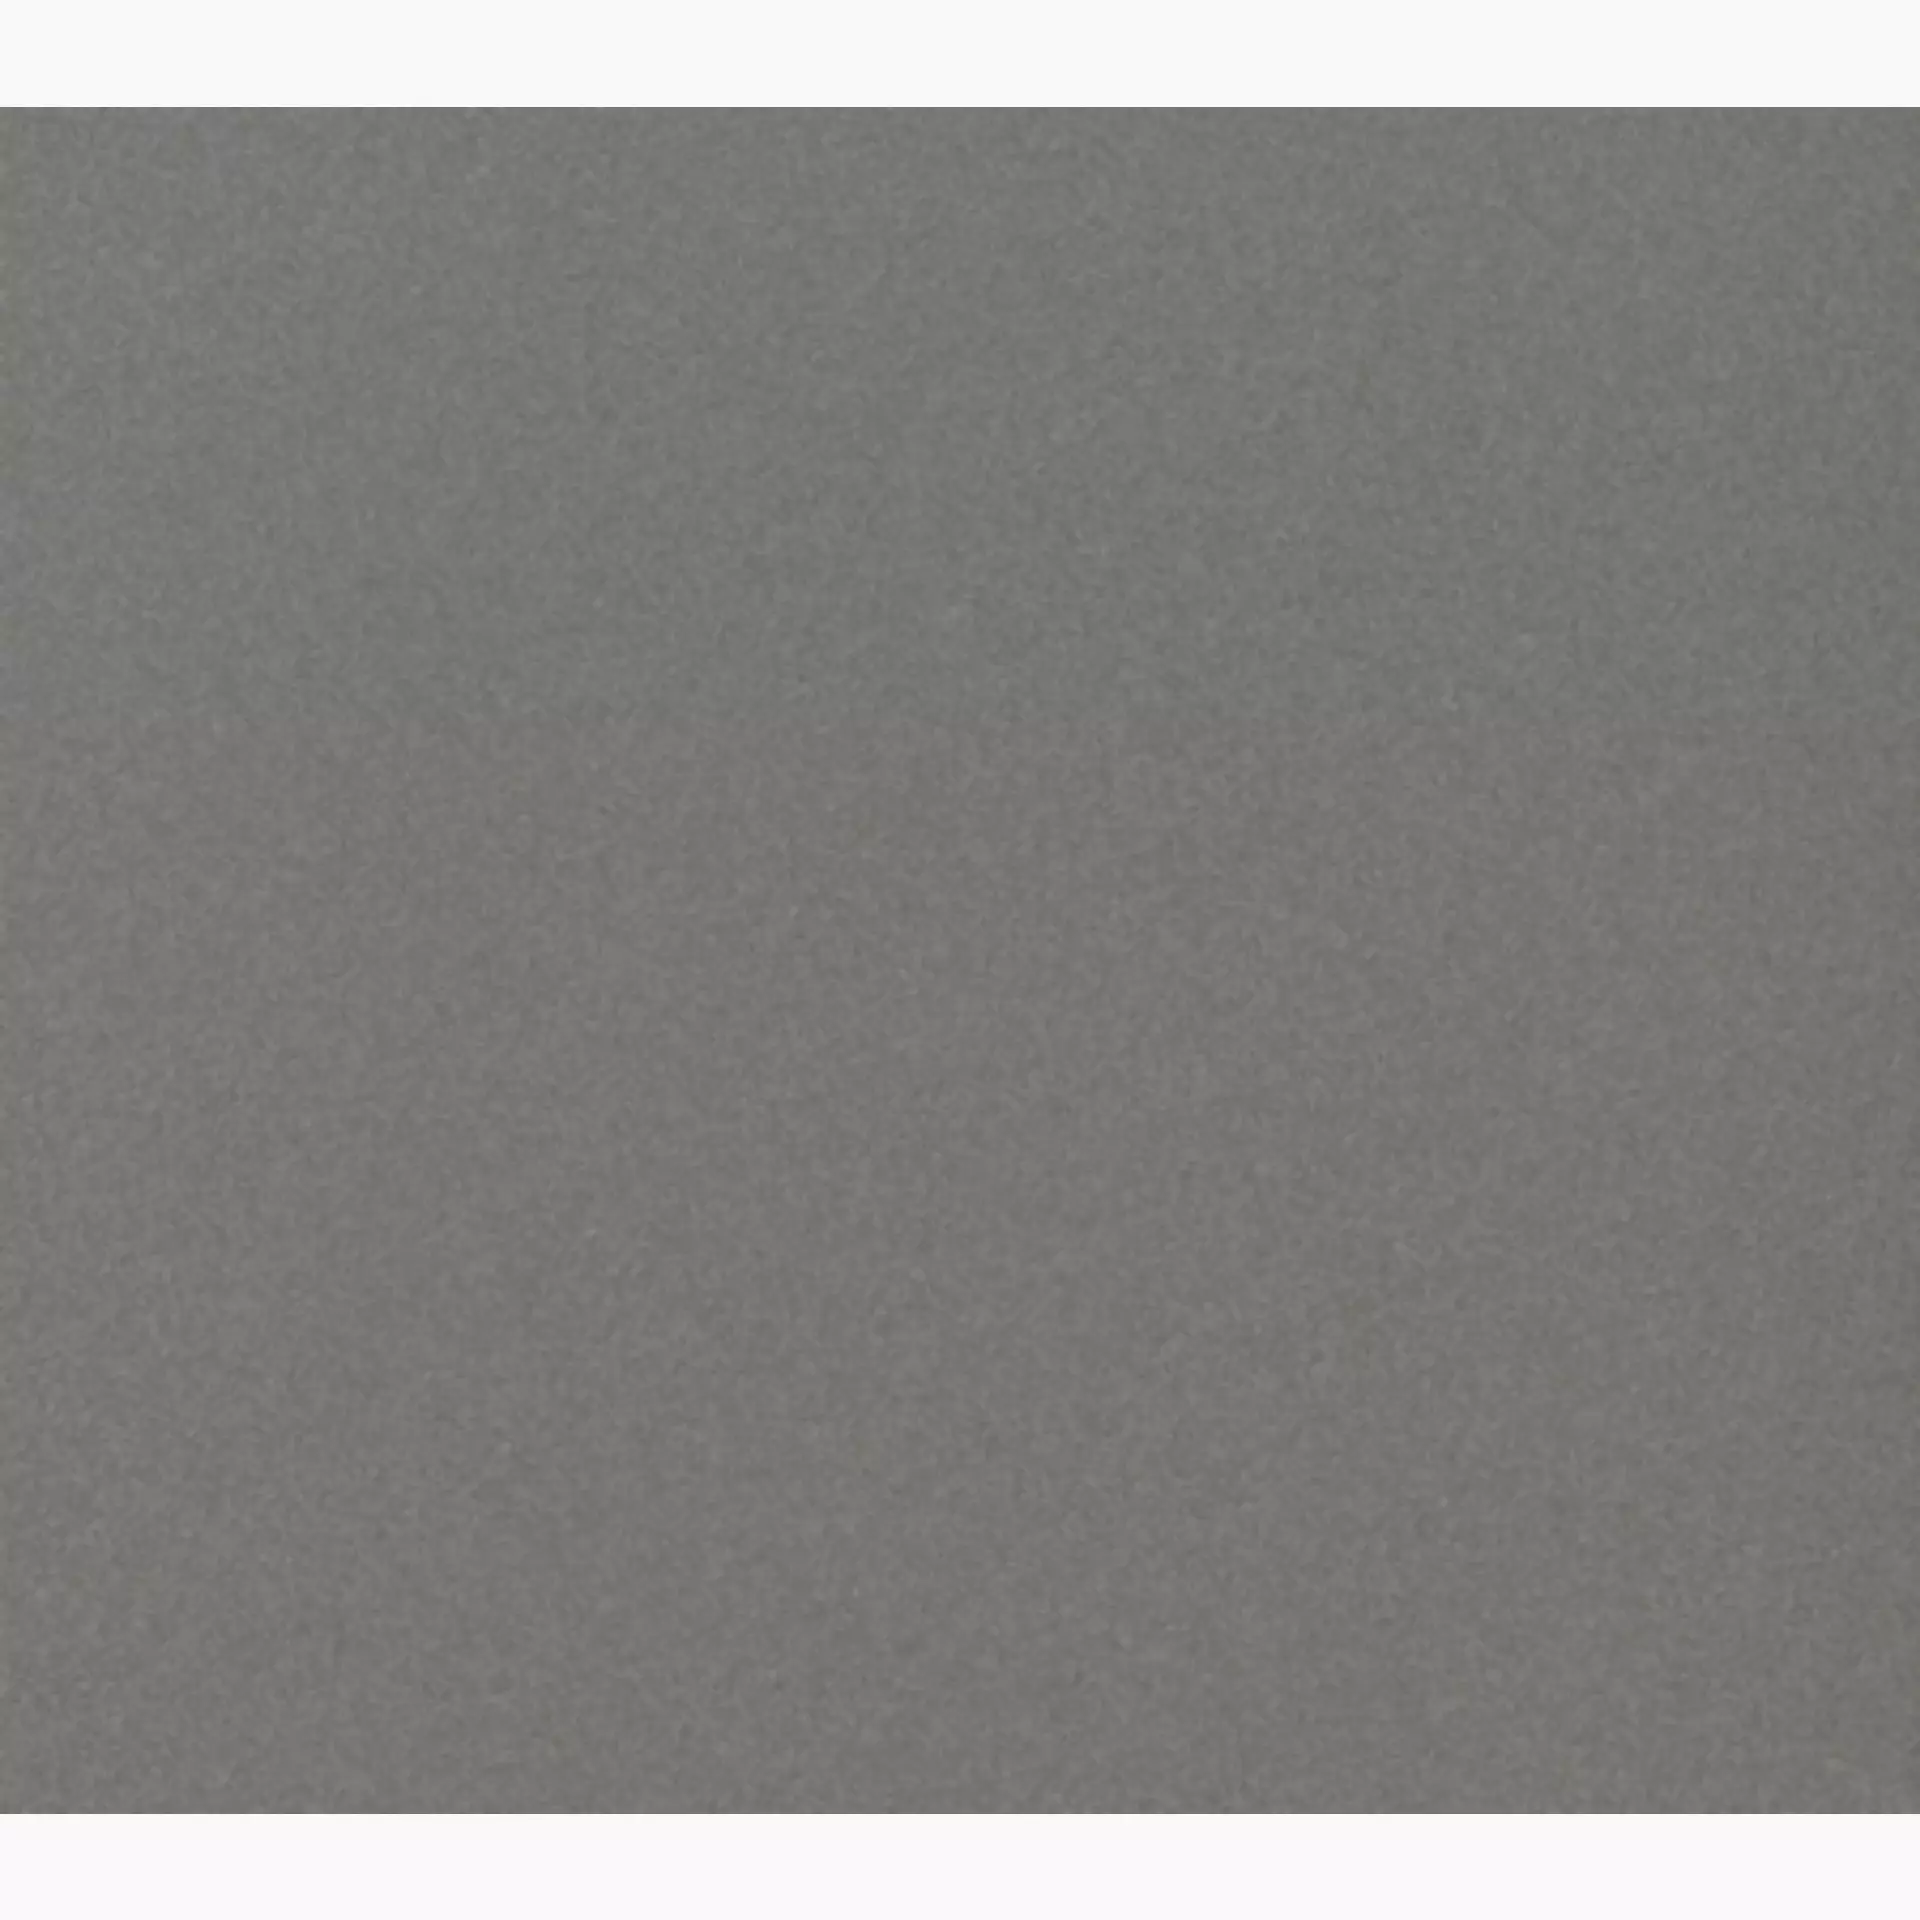 Casalgrande Granito Evo New York Naturale – Matt 3710186 30x30cm 7,6mm